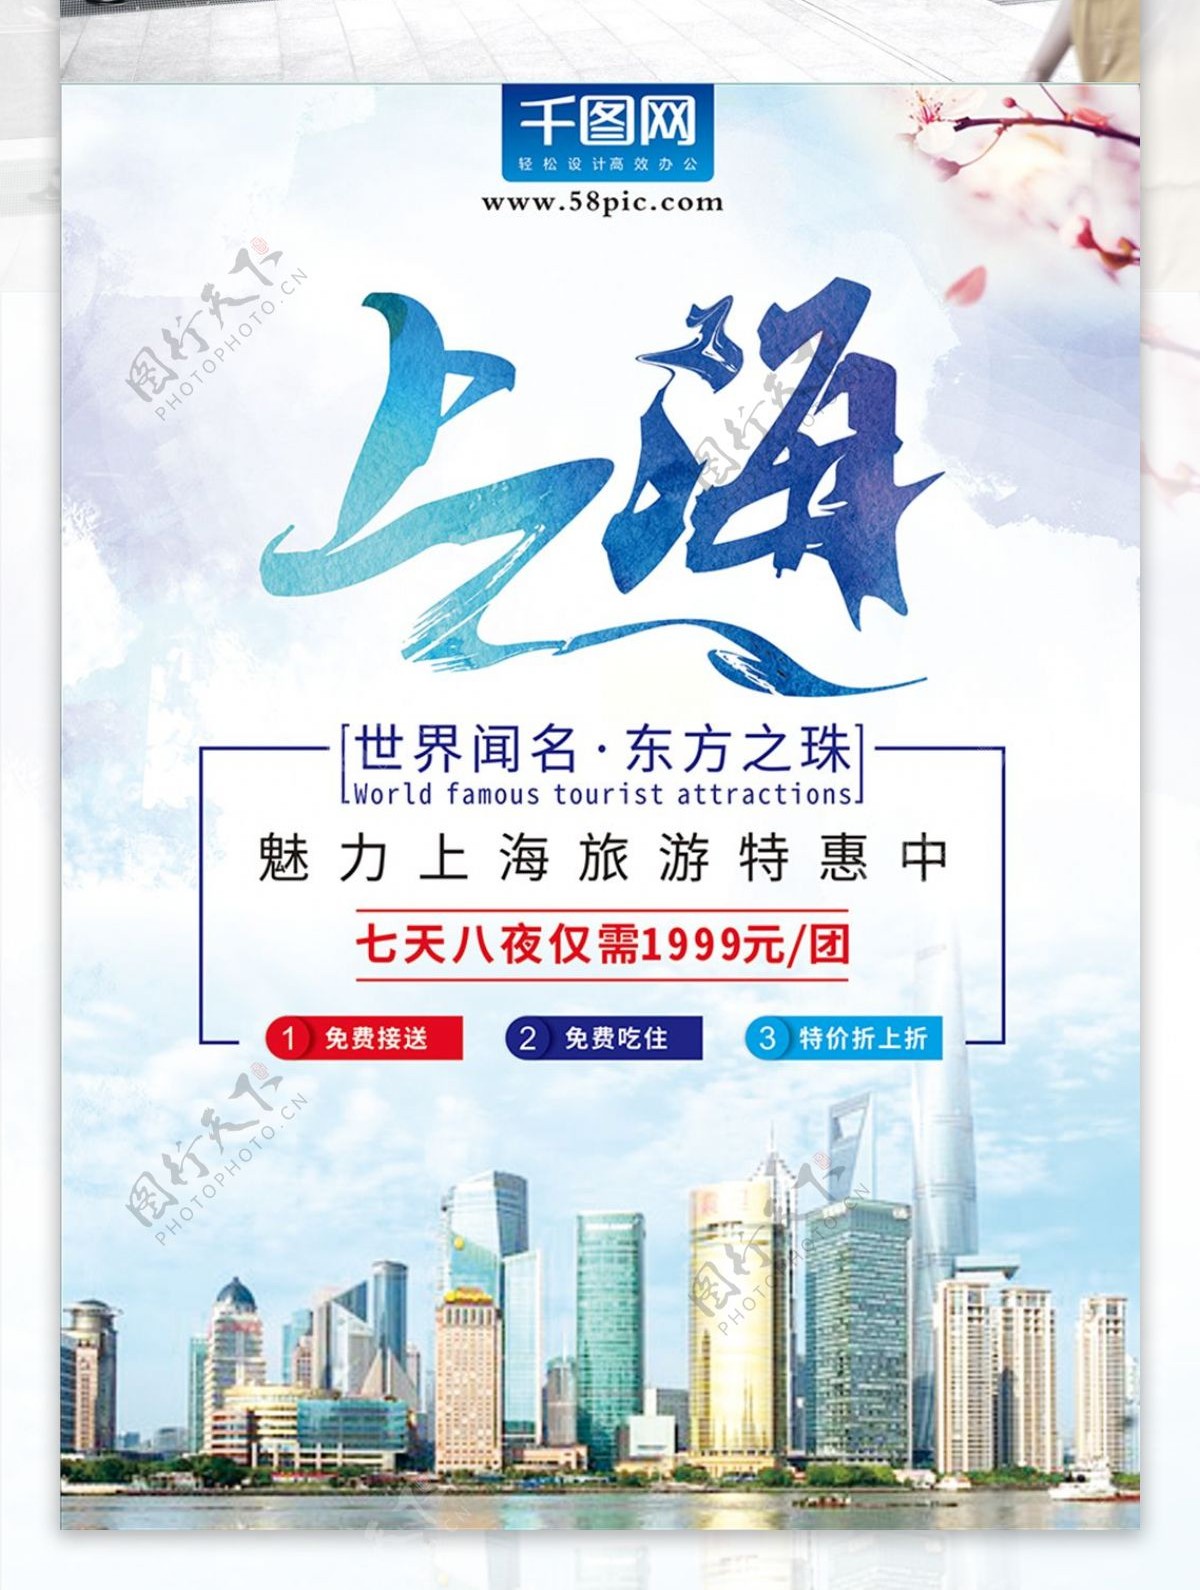 创意字体上海旅游海报